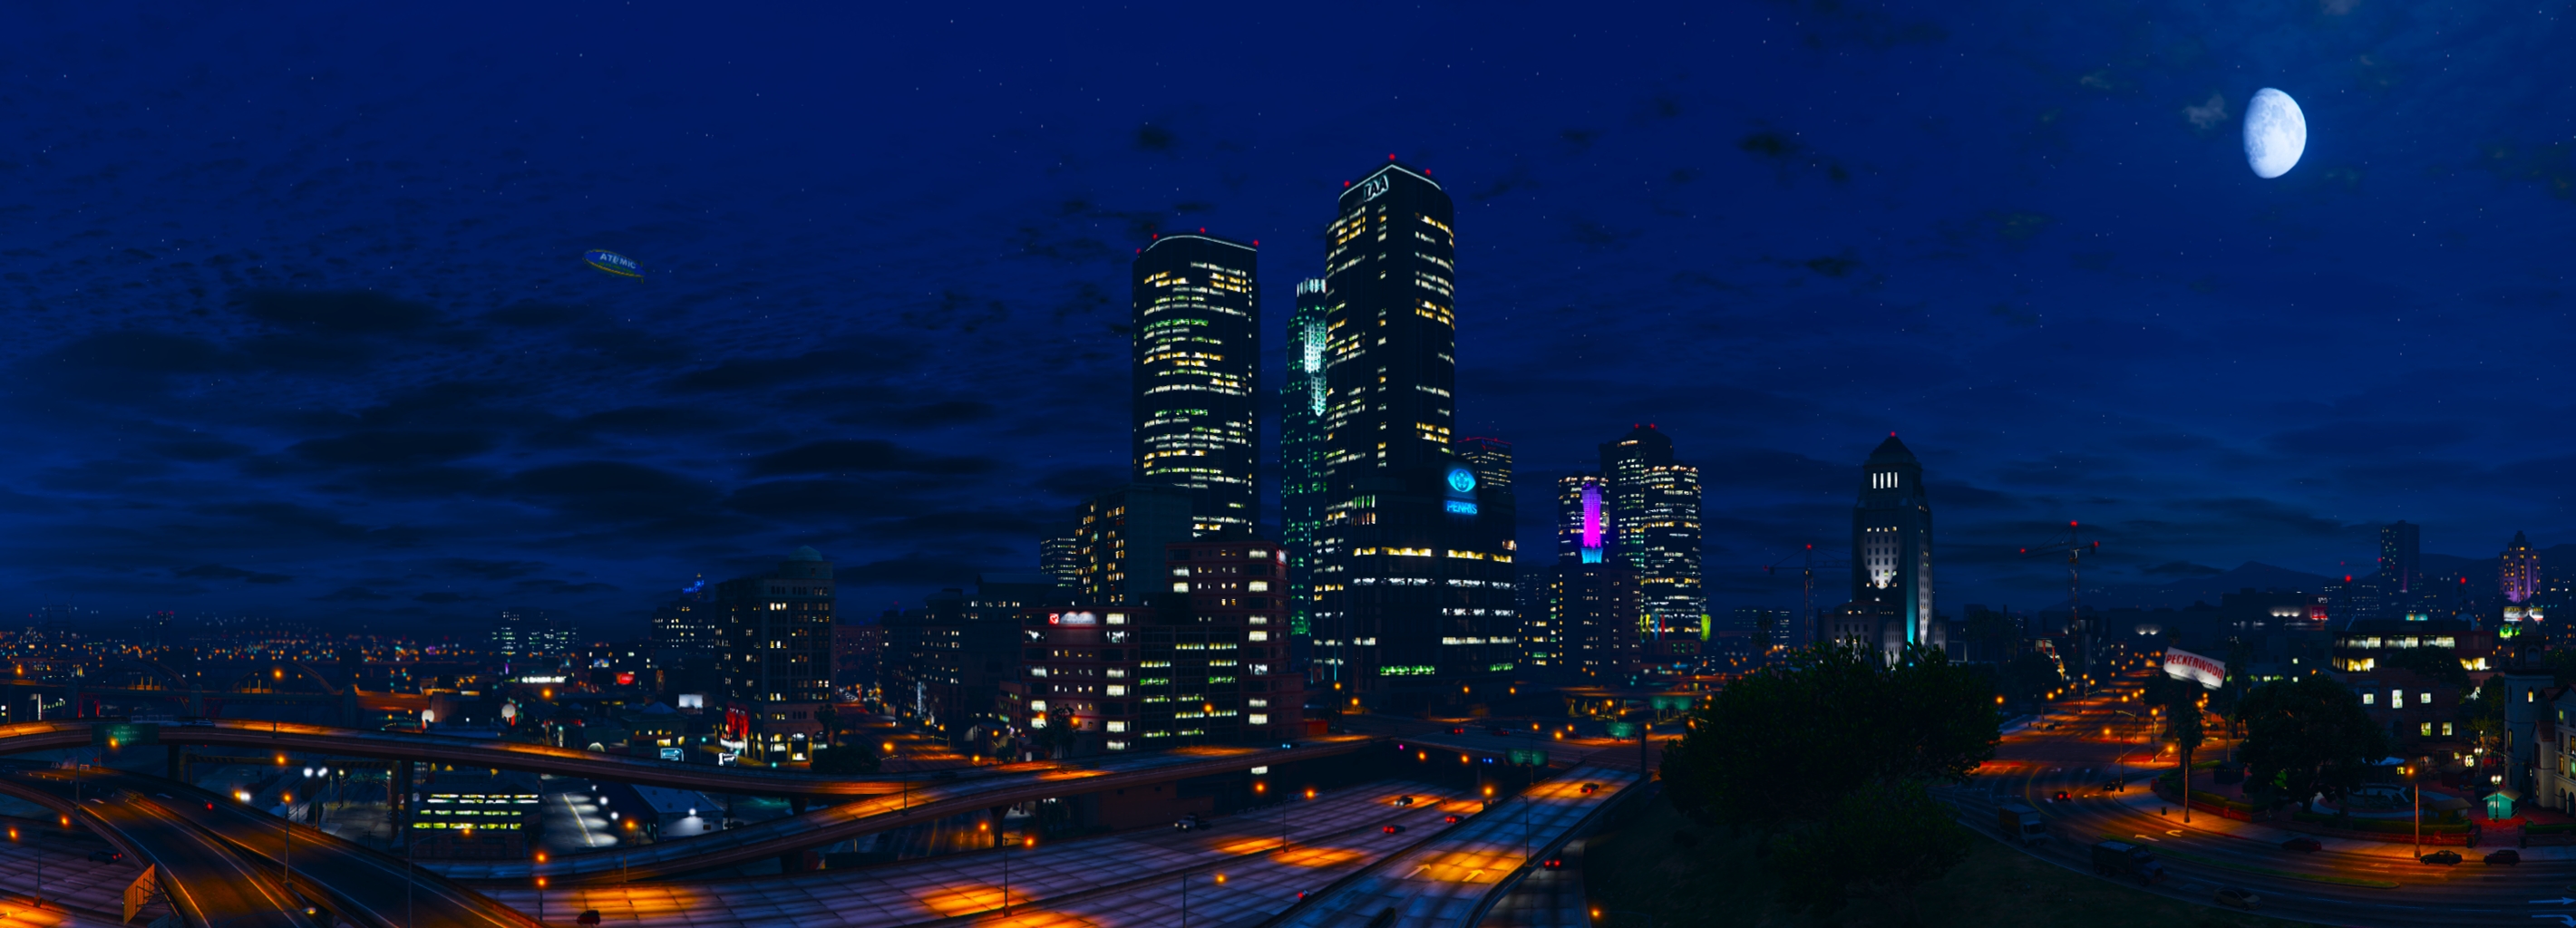 City Grand Theft Auto V Los Santos Moon Night Sky Skyscraper 2841x1024